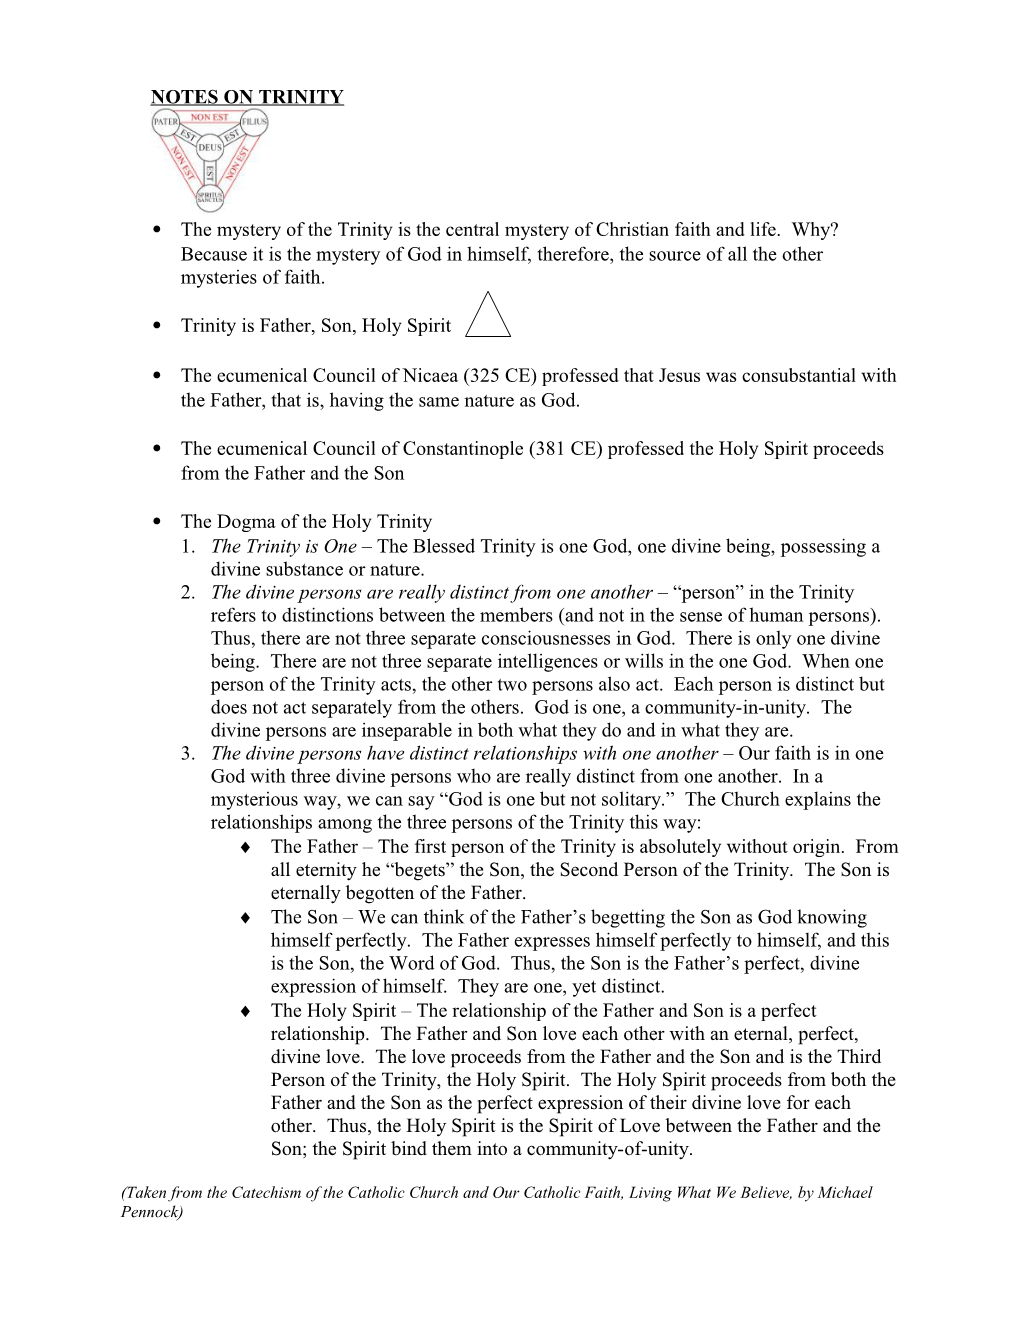 Notes on Trinity